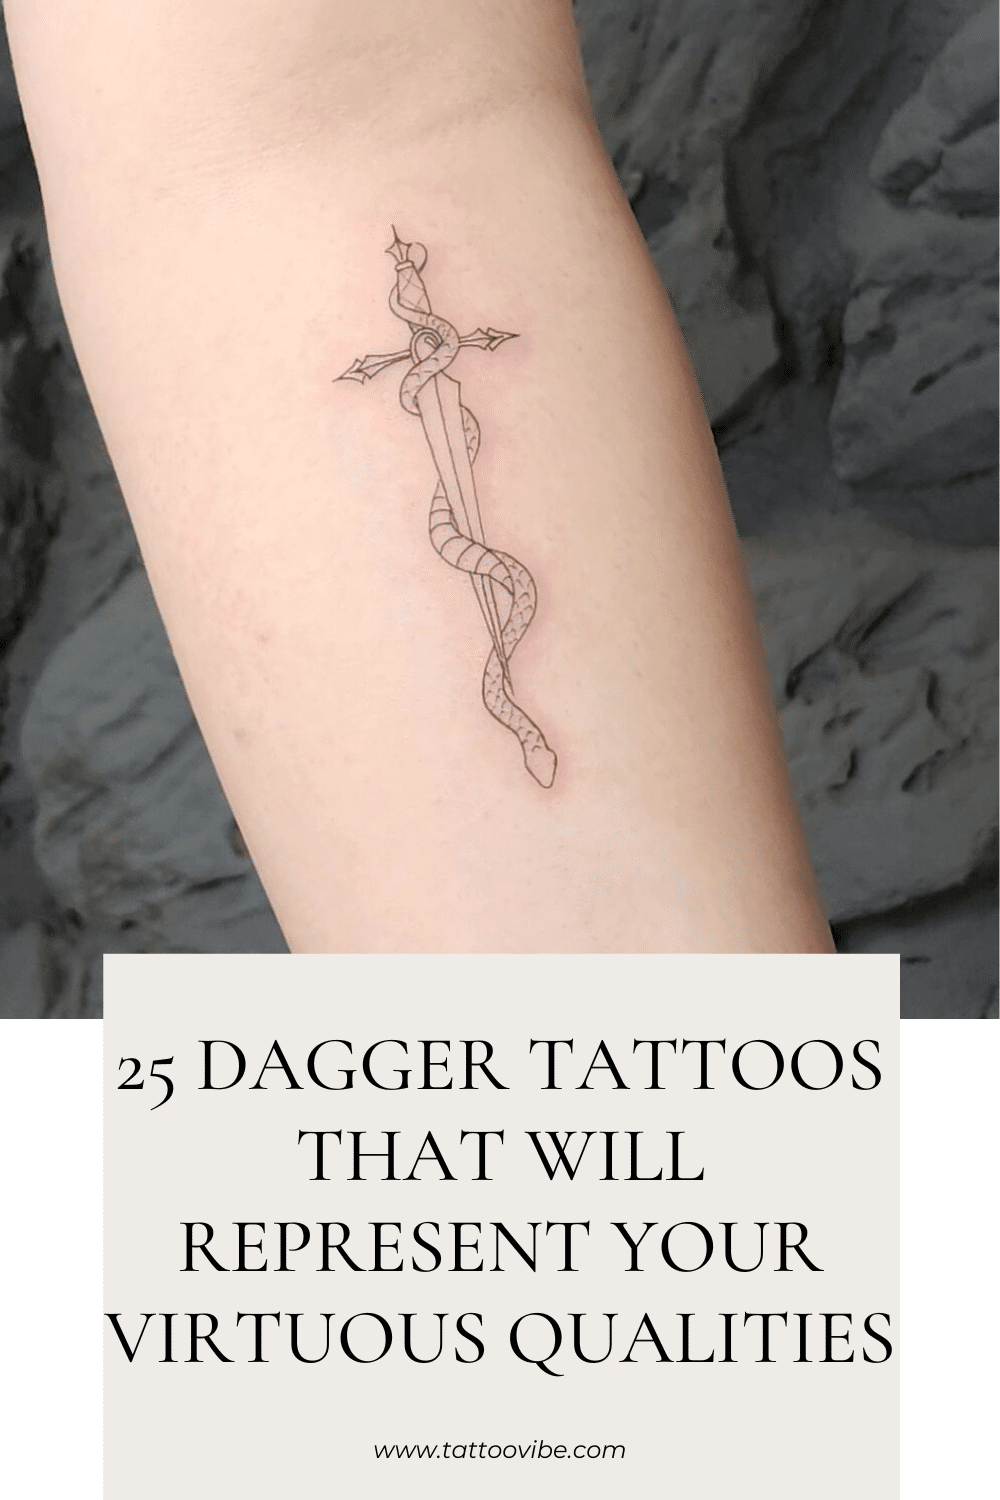 25 tatuagens de punhal que representarão suas qualidades virtuosas